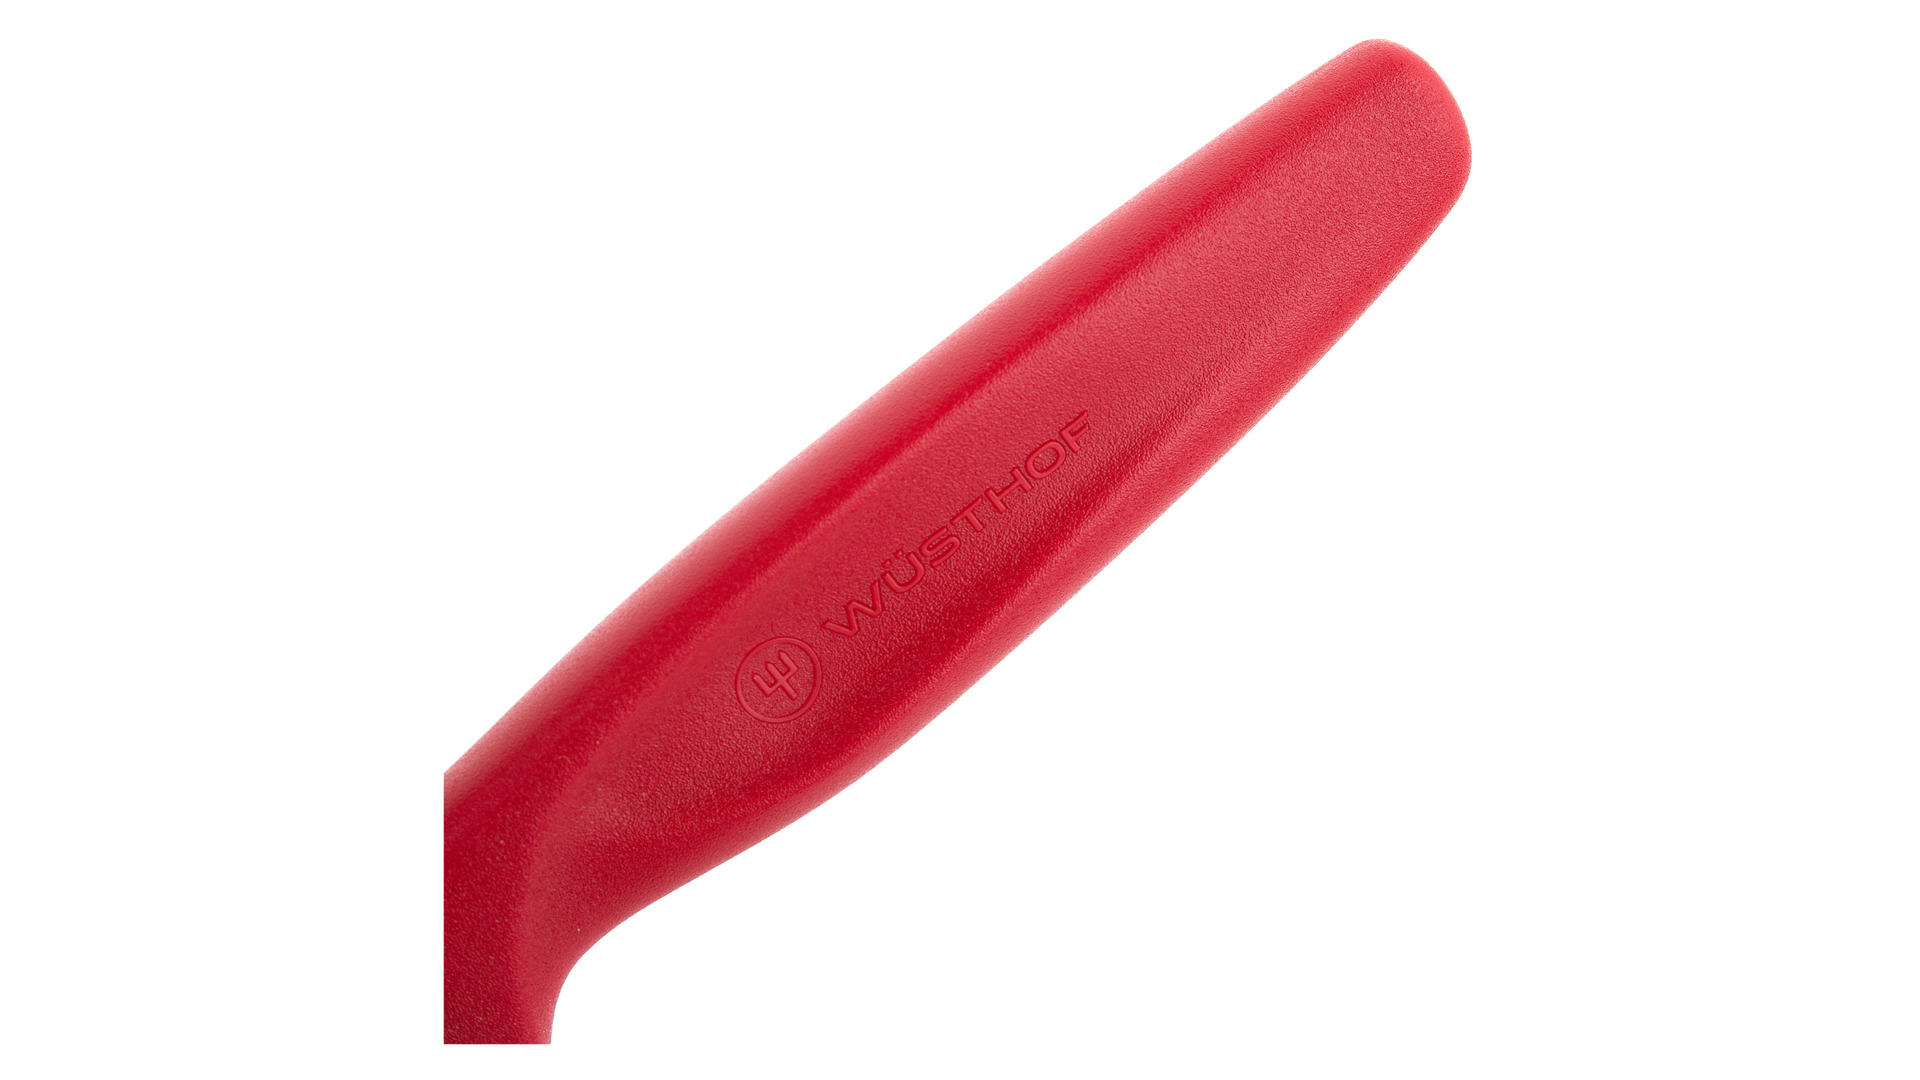 Нож универсальный овощной WUESTHOF Create Collection 10см, красная рукоятка